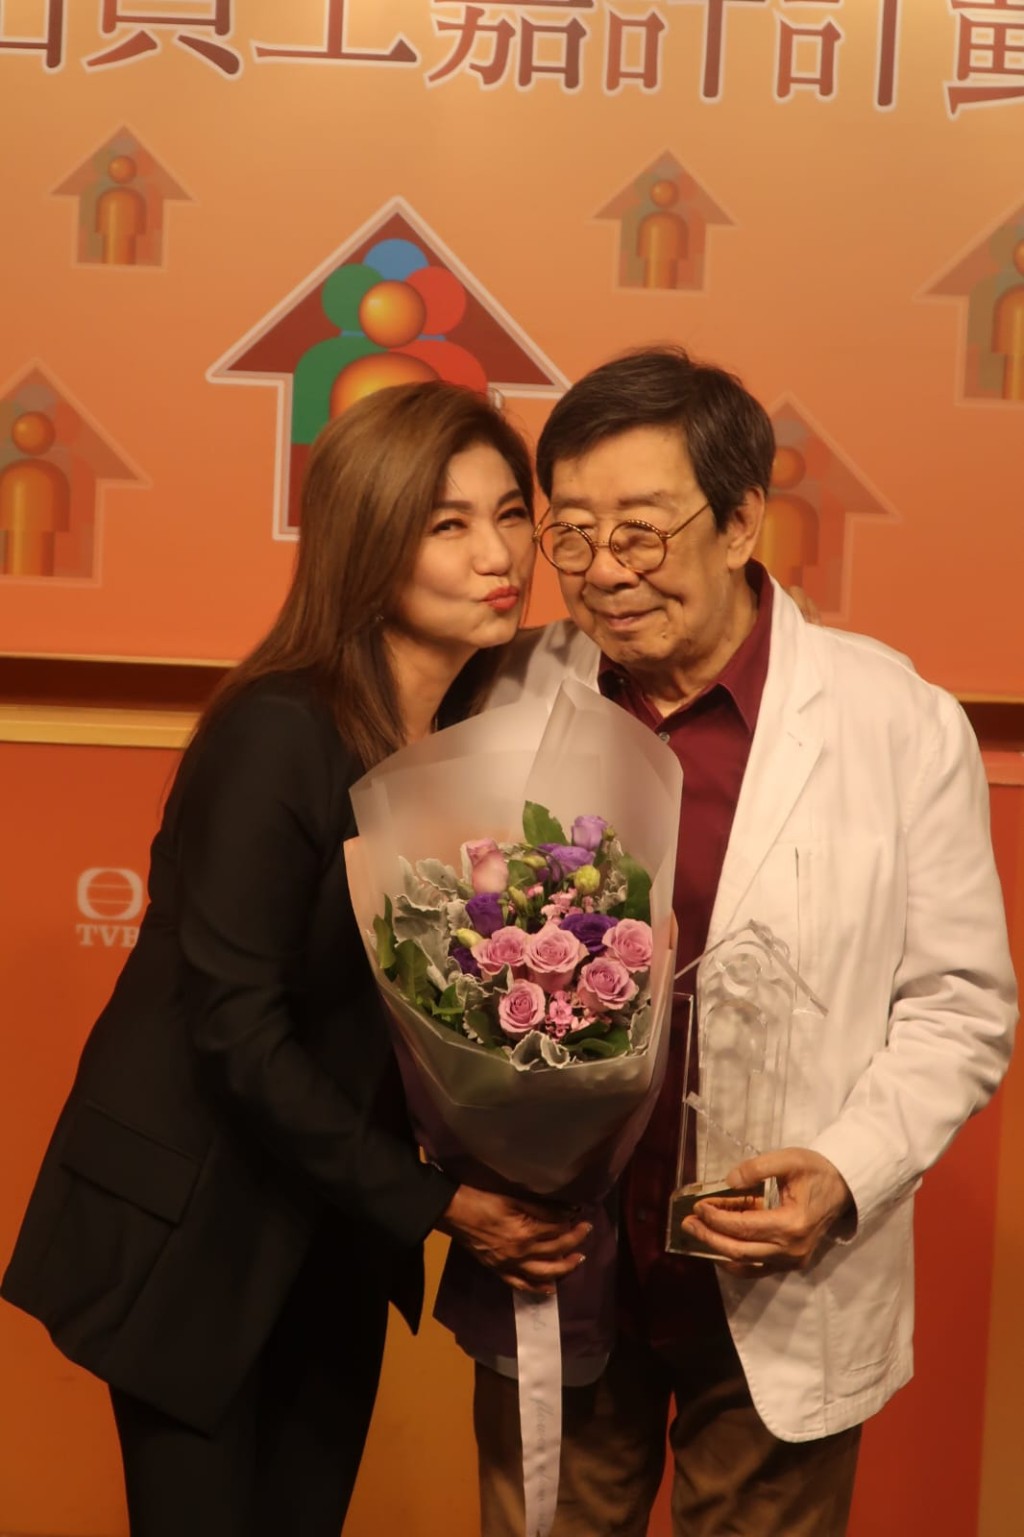 胡楓早前獲TVB頒發傑出員工獎，獲樂易玲獻吻。